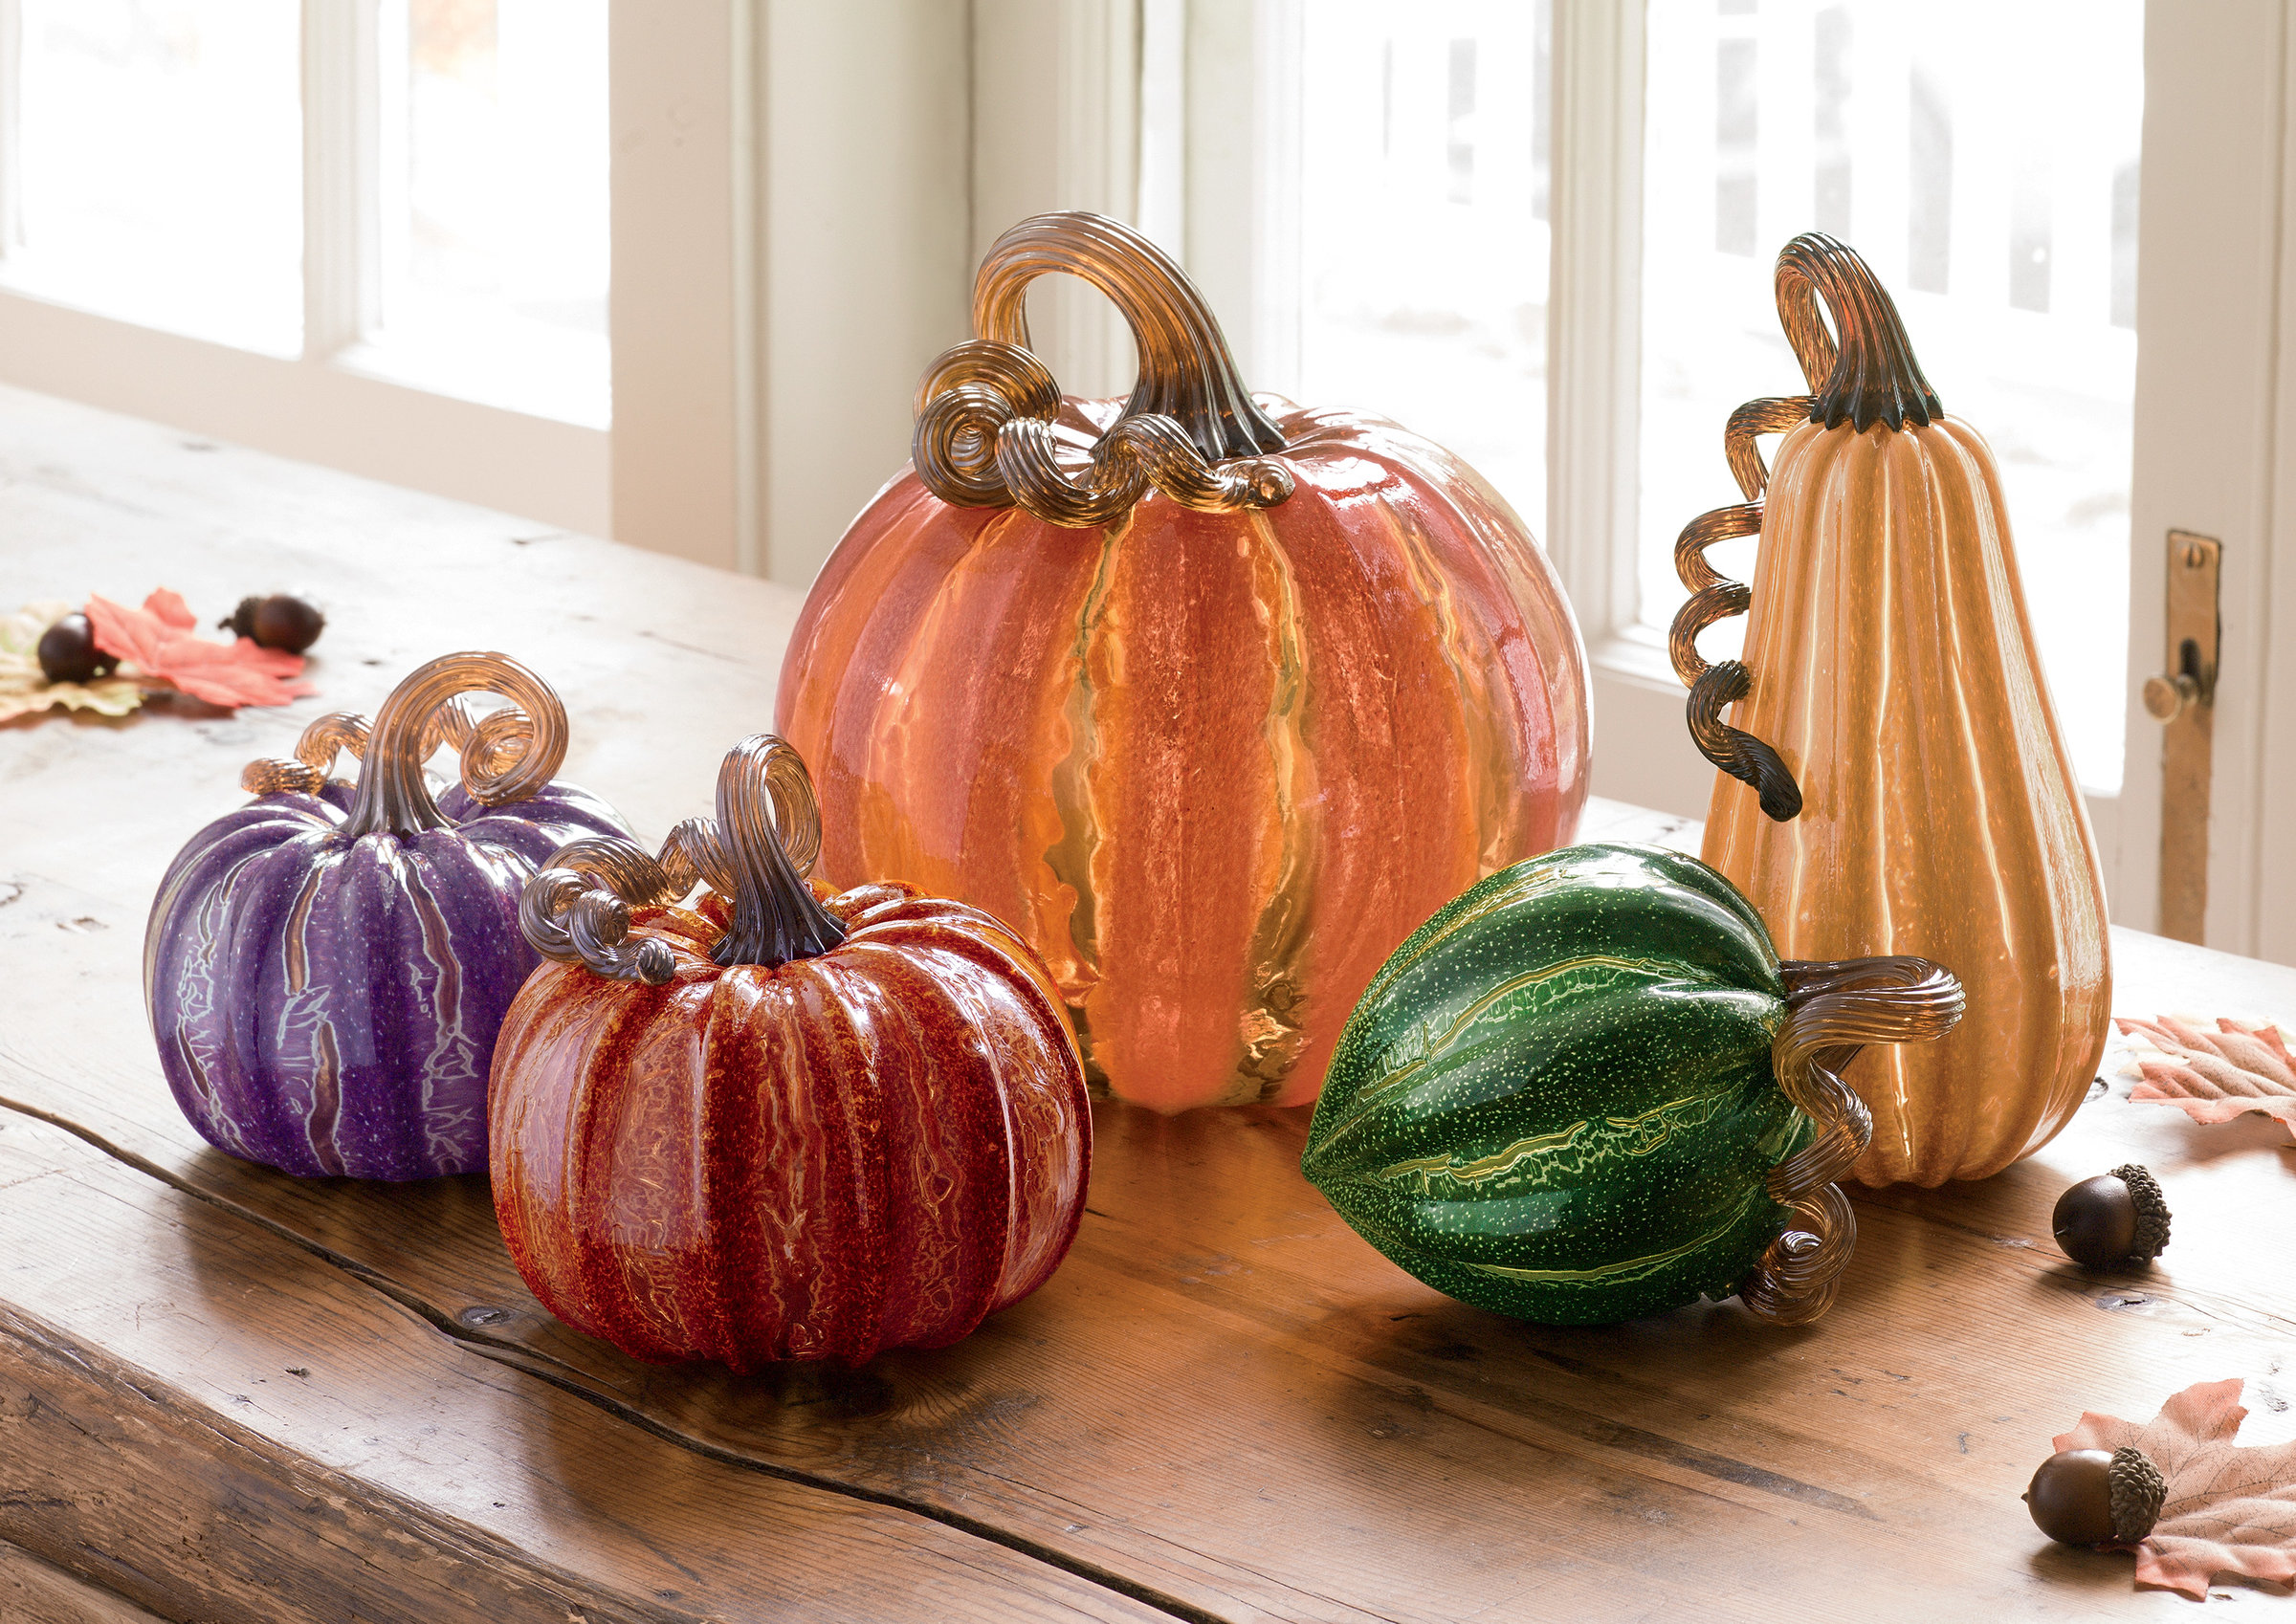 Harvest Pumpkins by Leonoff Art Glass (Art Glass Sculpture) | Artful Home